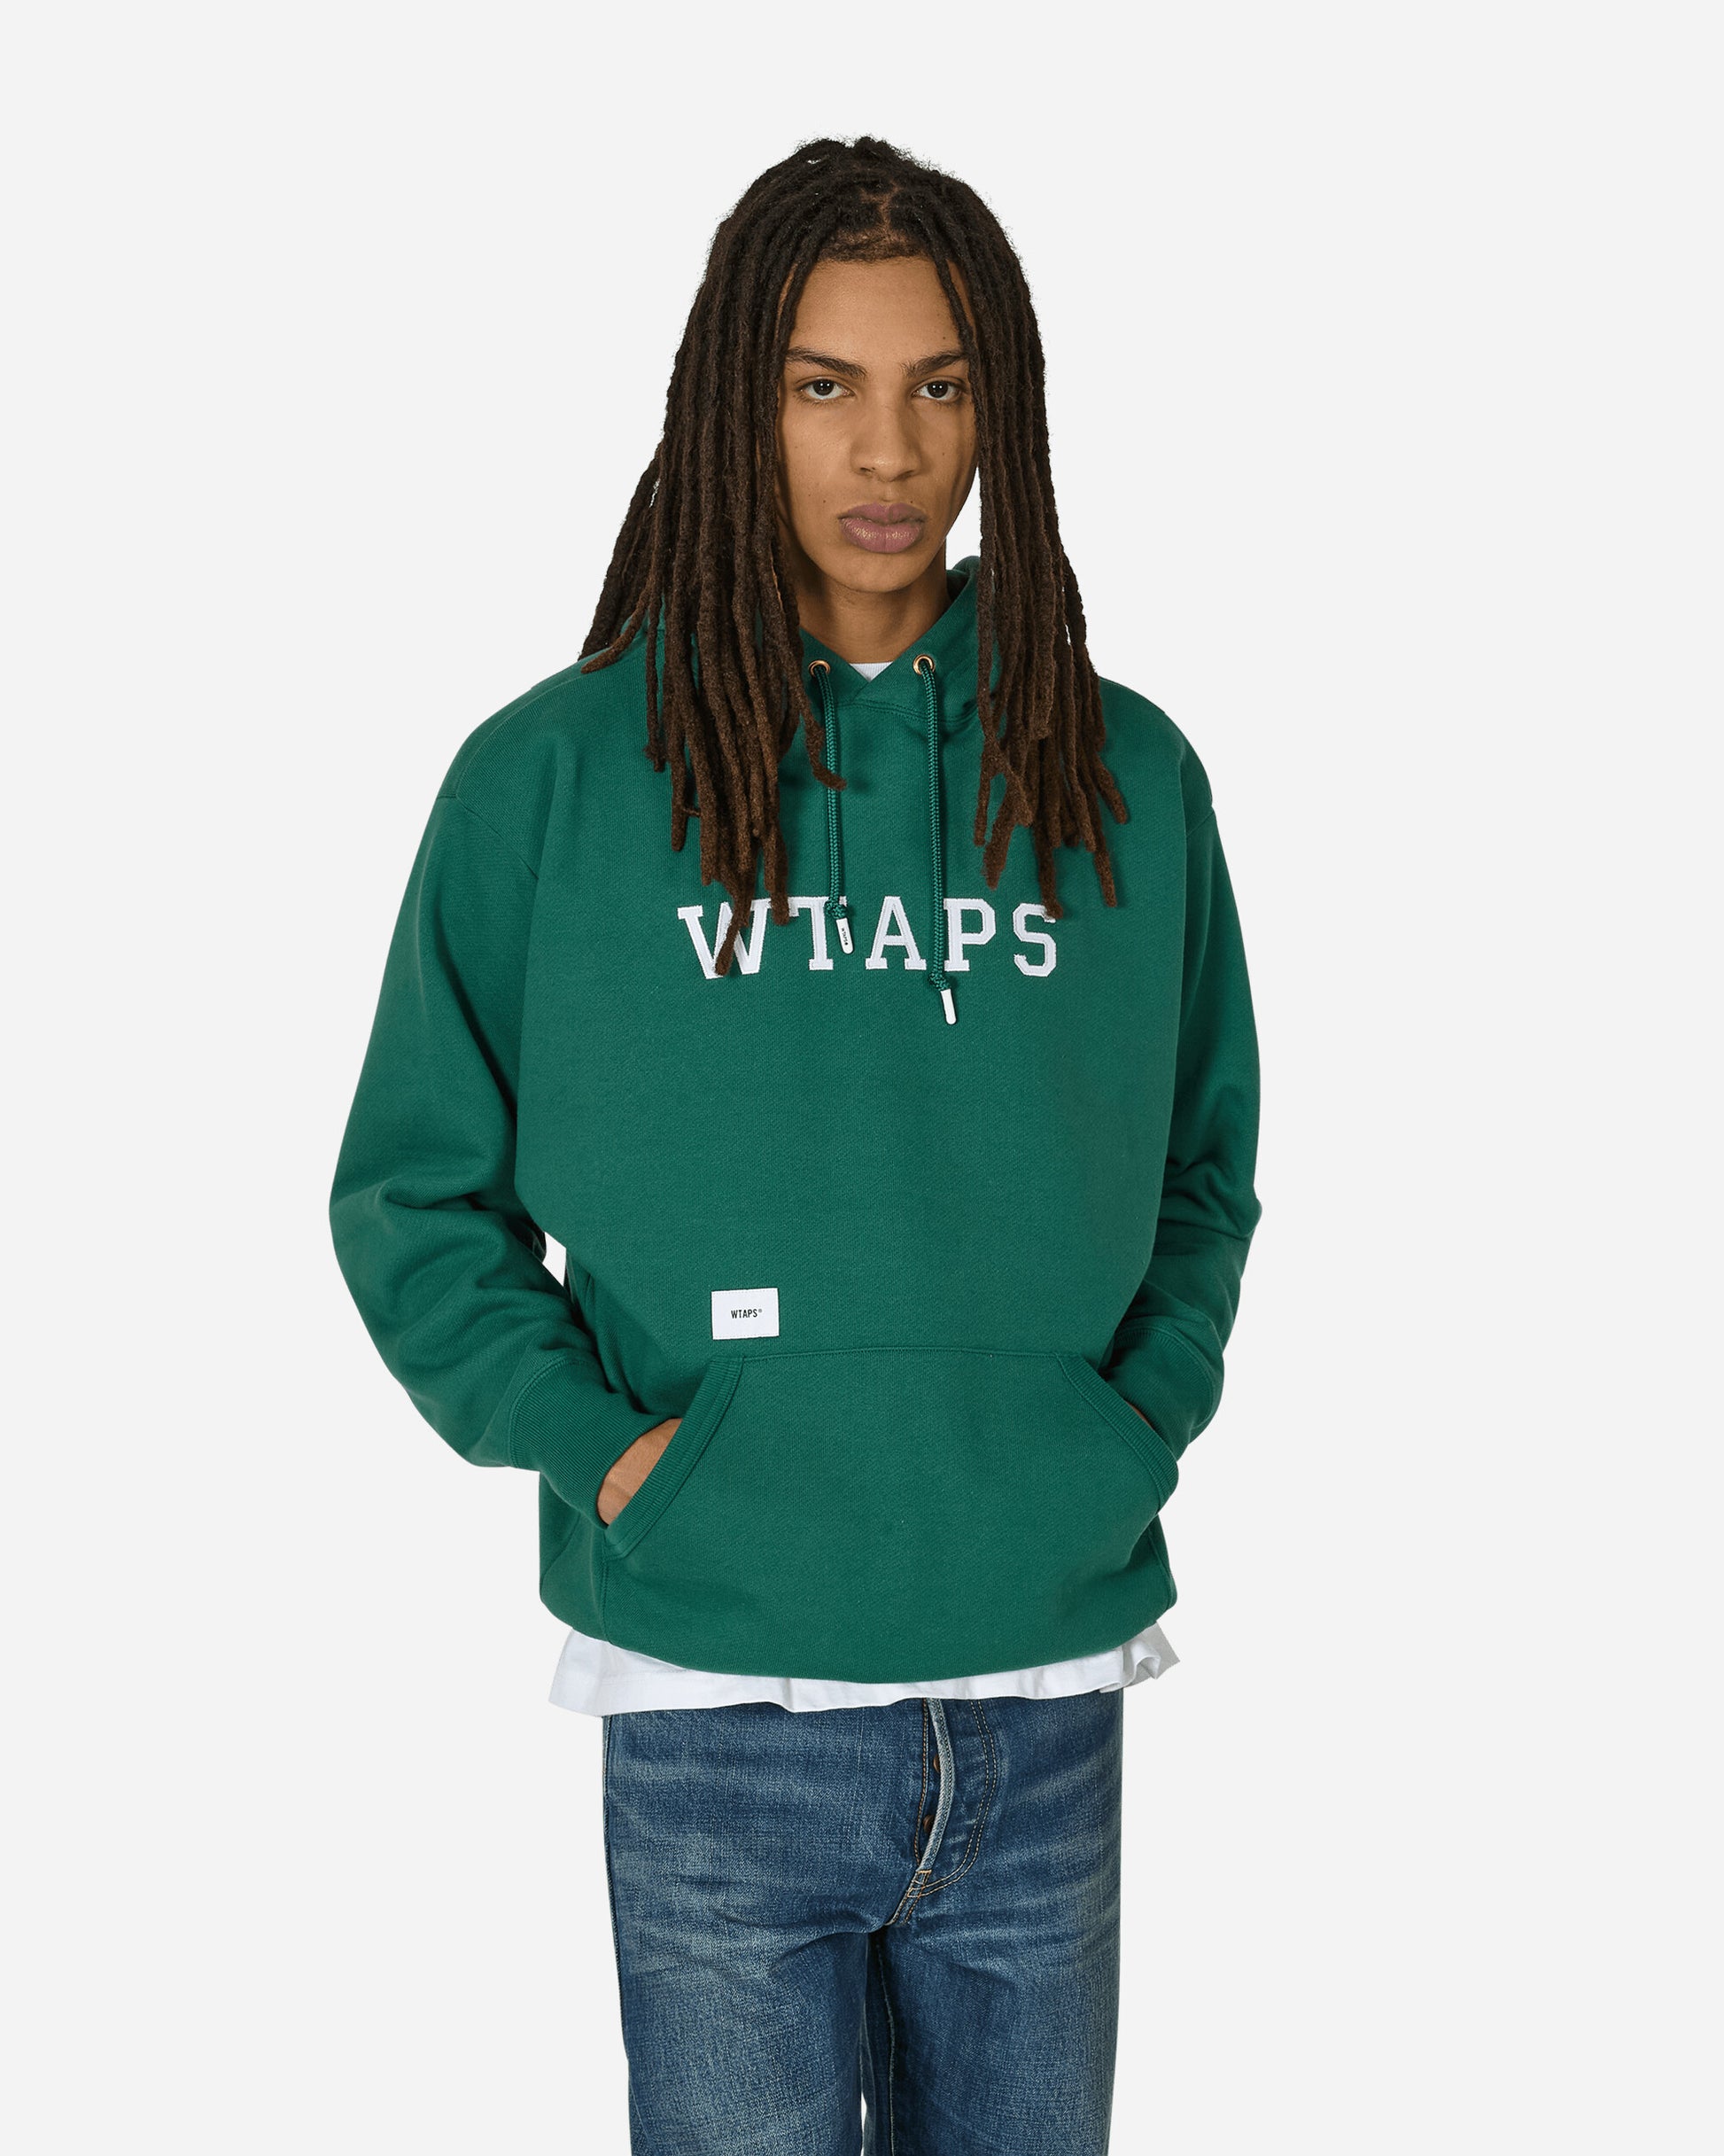 WTAPS Dt Cut & Sewn Green Sweatshirts Hoodies 241ATDT-CSM04 GRN